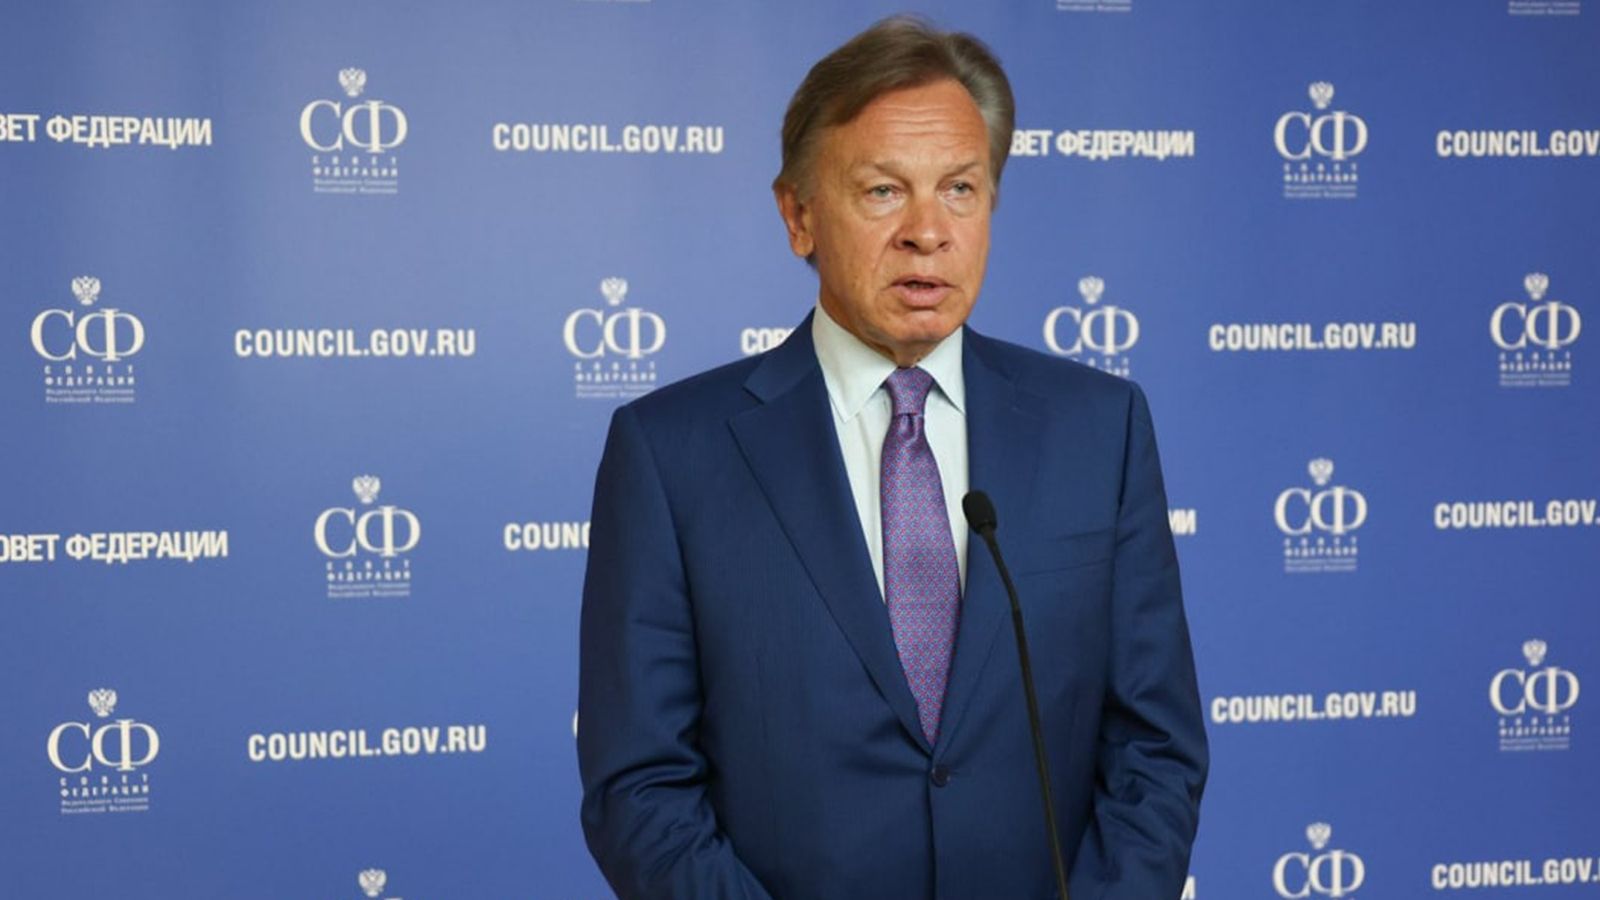 Сенатор Пушков усомнился в психическом здоровье Болтона после слов о ядерных ударах